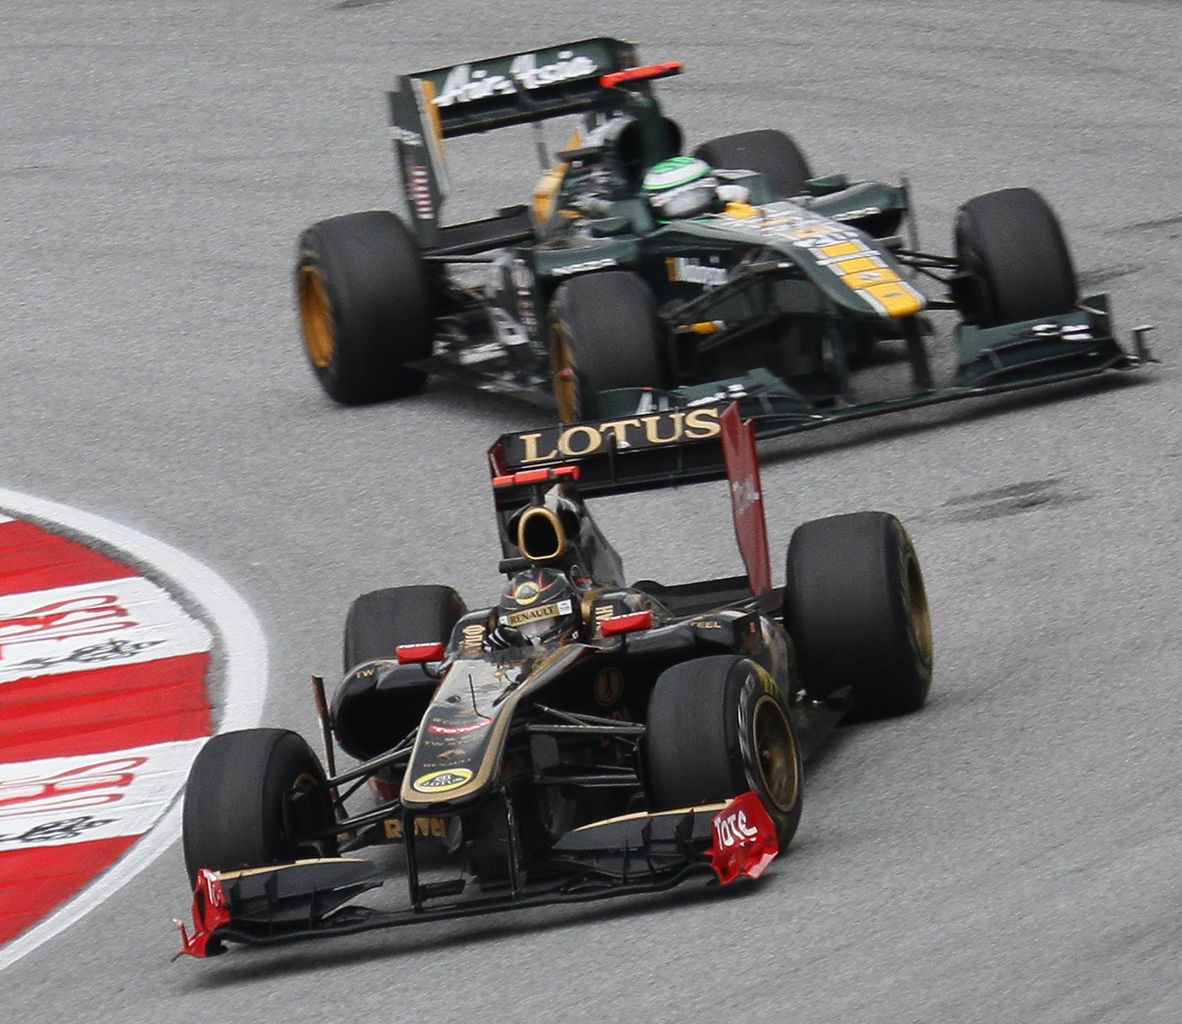 Renault was rebranded as Lotus in 2011, racing aginst Team Lotus.